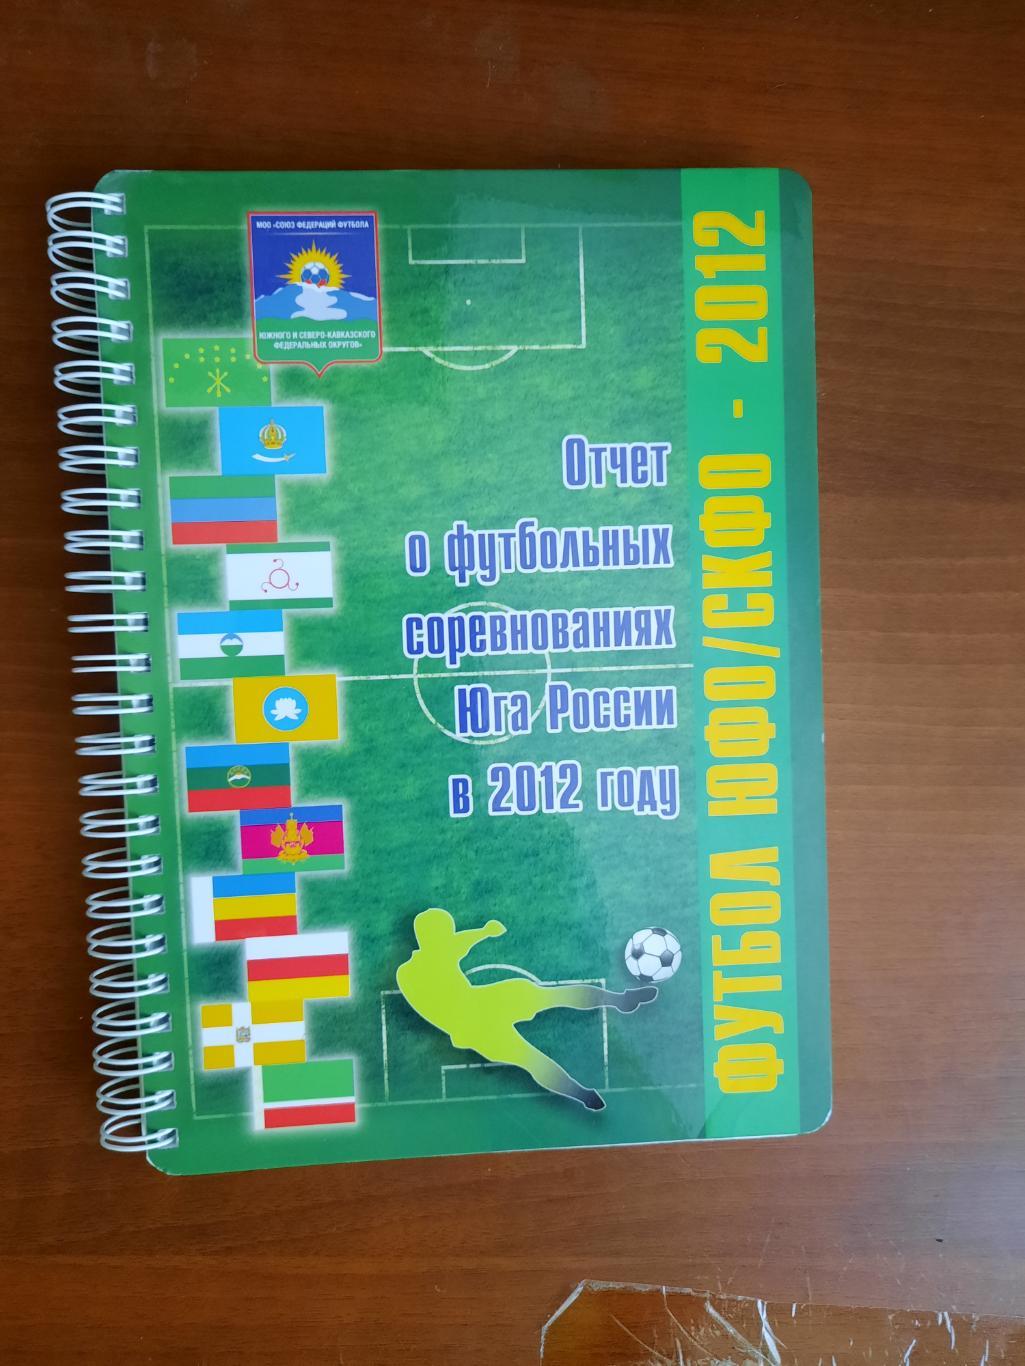 Отчет о футбольных соревнованиях юга России в 2012 году